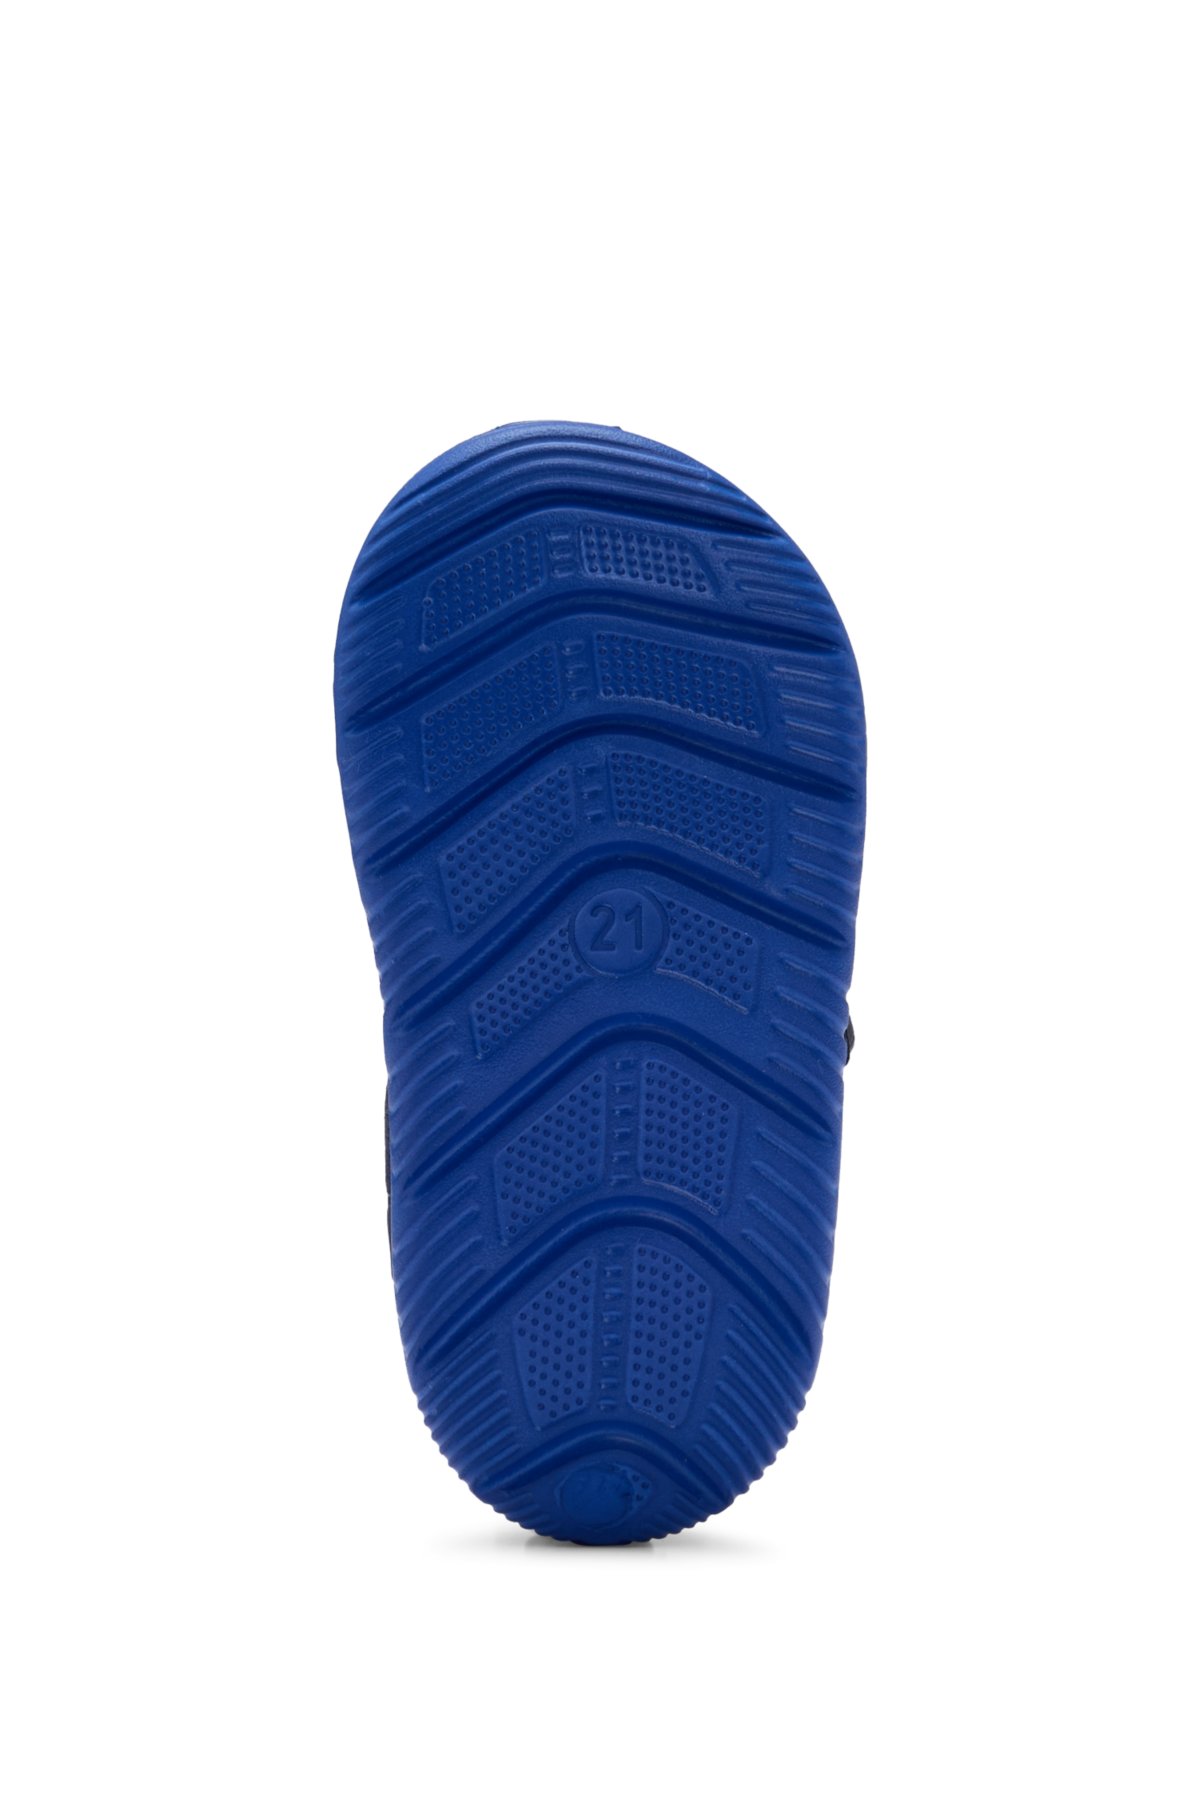 Kids' touch-closure sandals with logo strap, Dark Blue